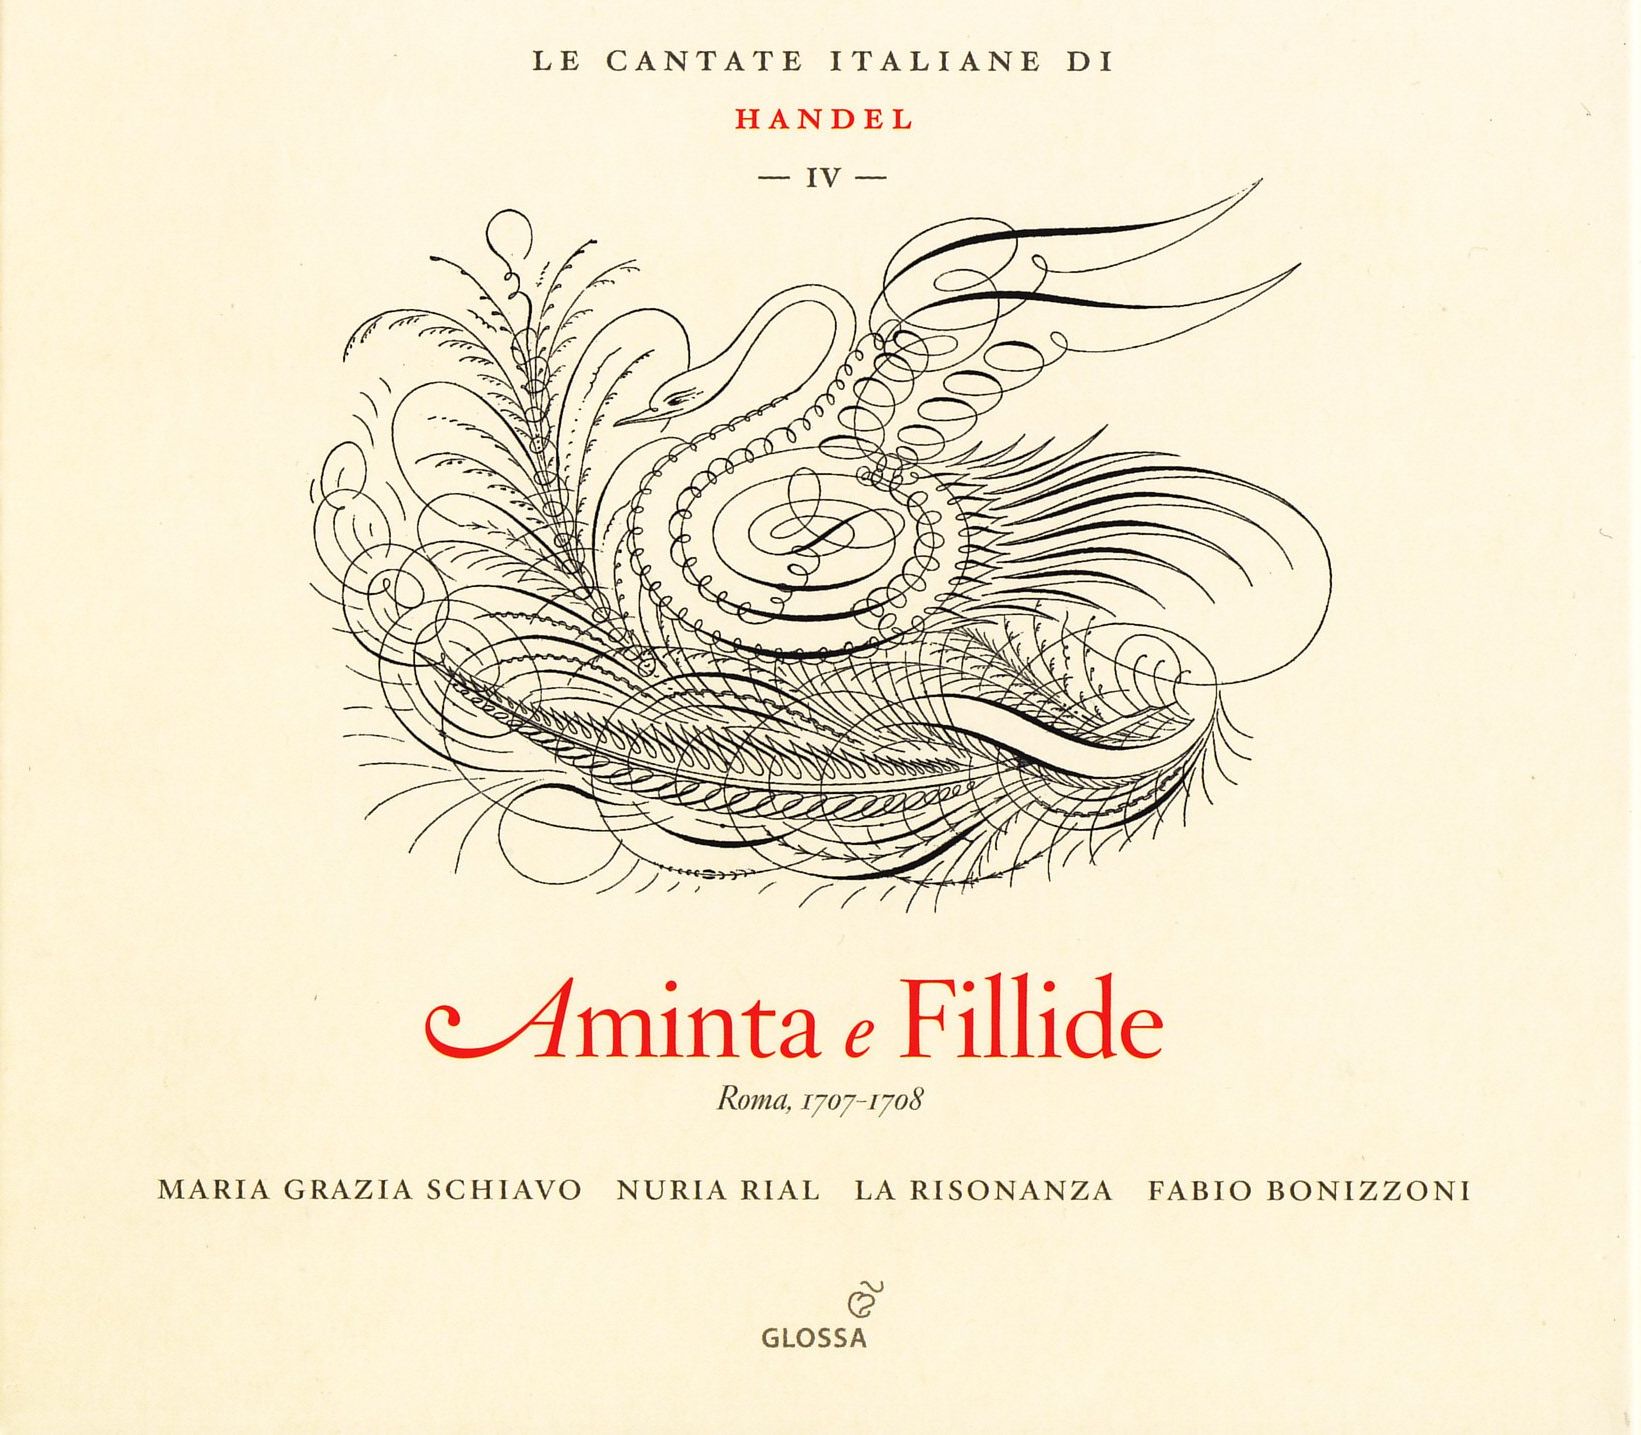 Handel - Italian Cantatas Vol.4 - Le Cantate per il Marchese Ruspolii